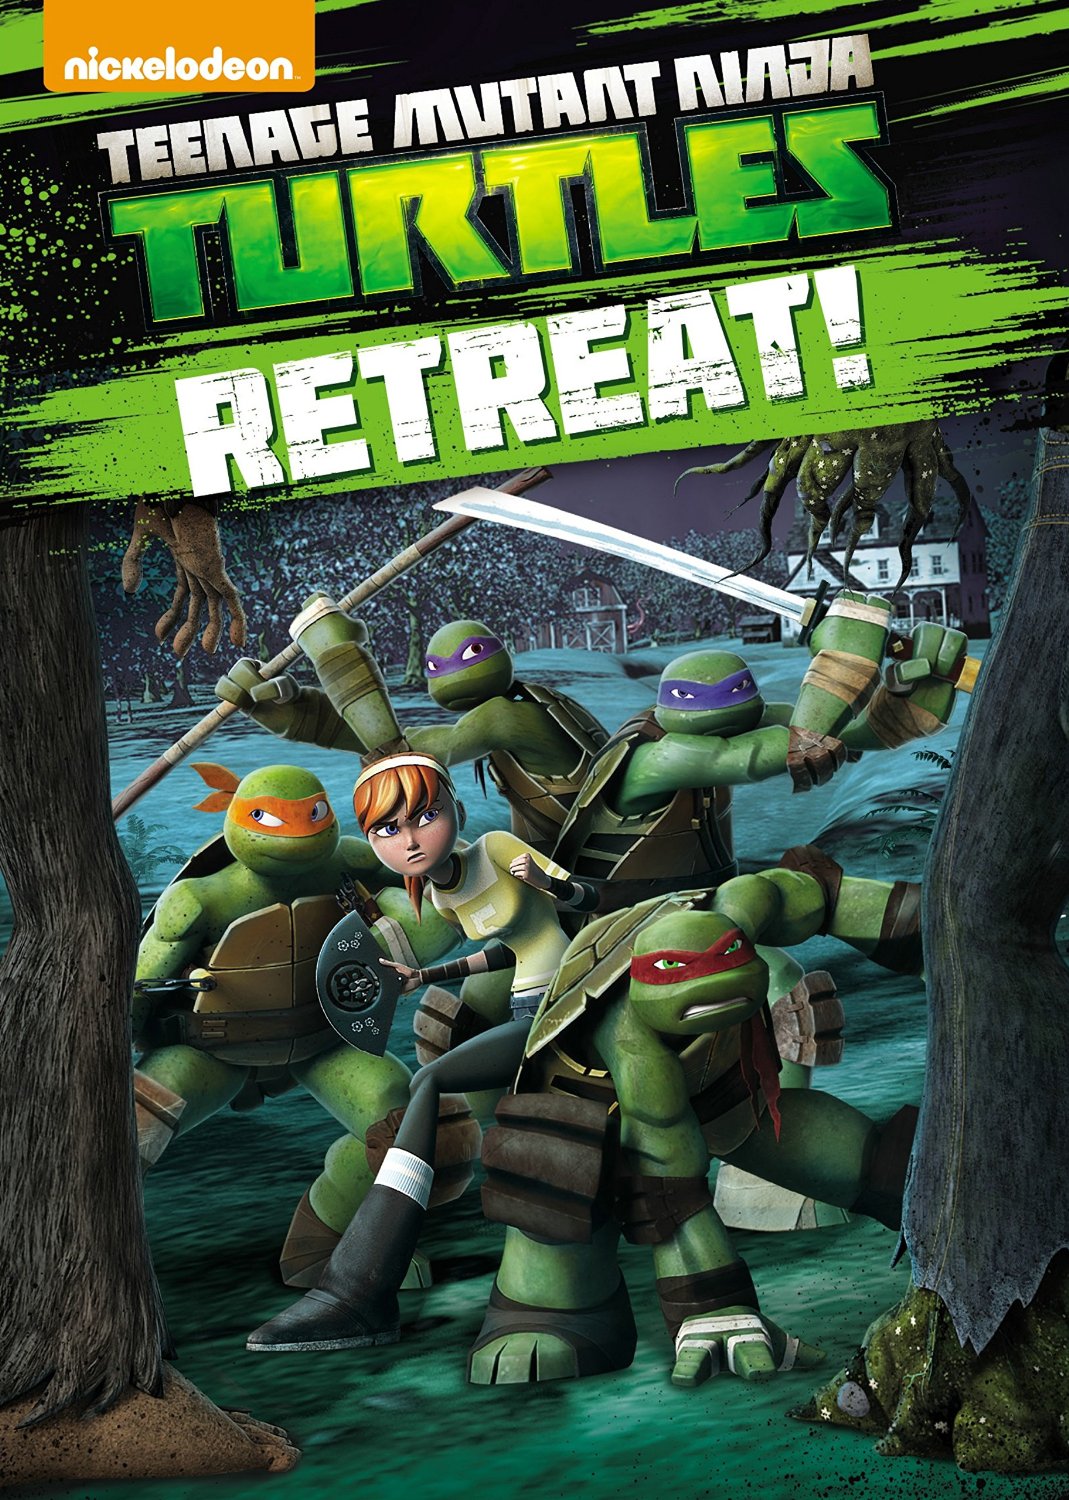 Teenage Mutant Ninja Turtles Nickelodeon